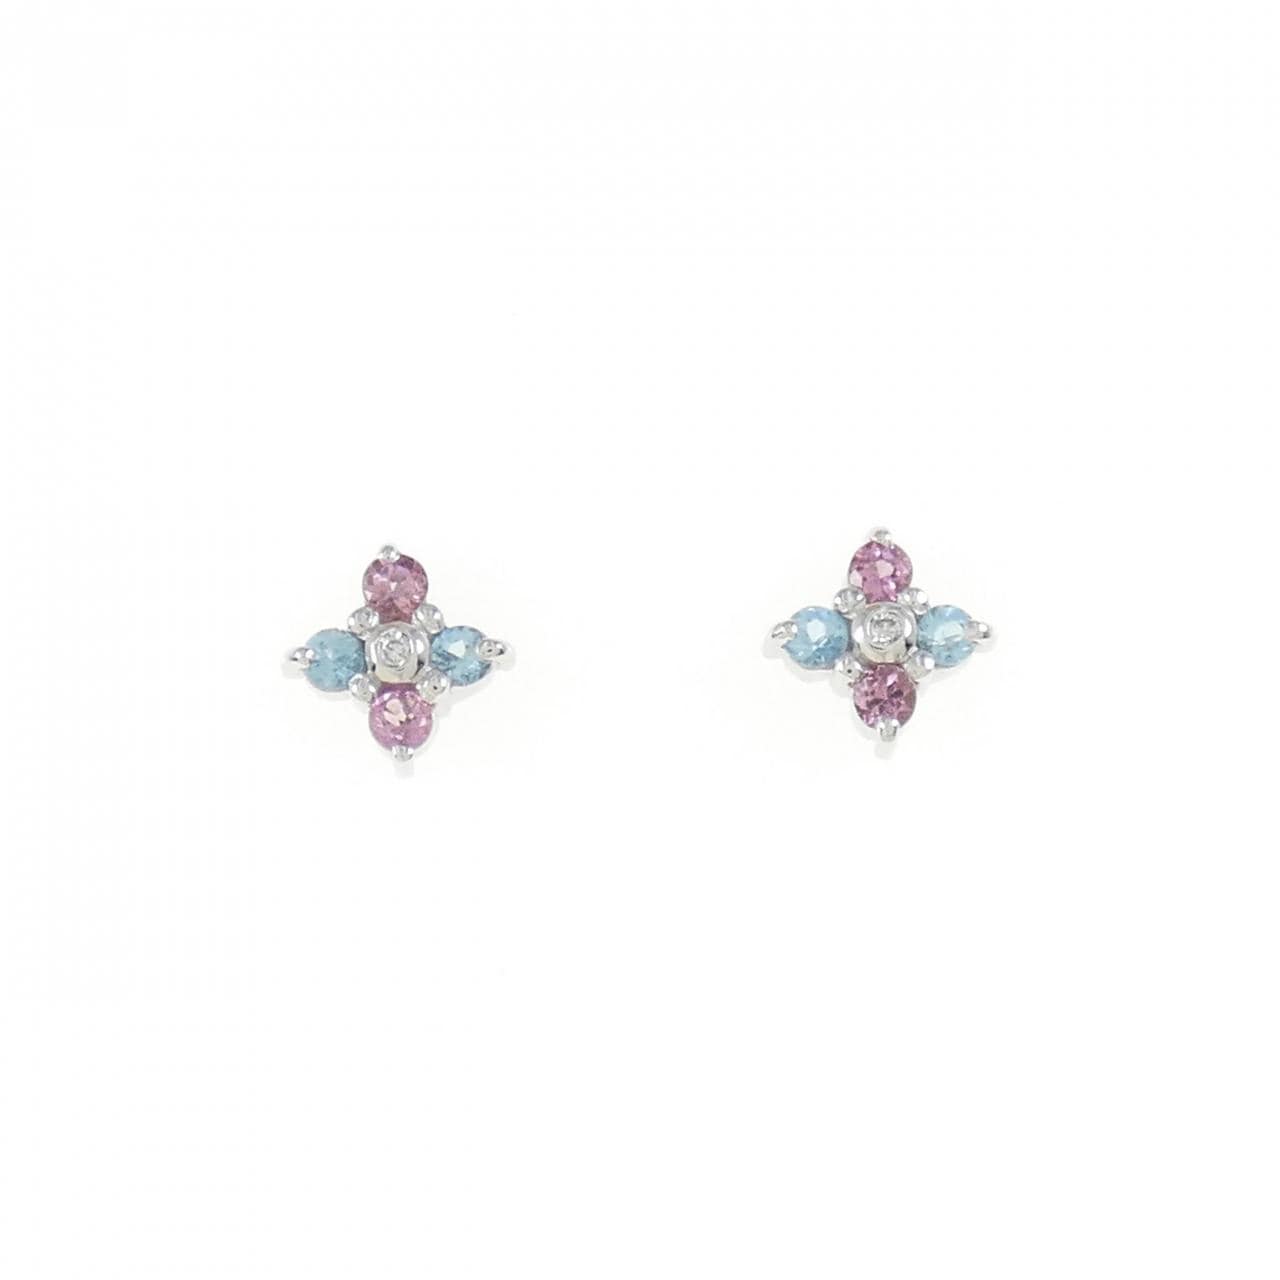 K18WG flower colored stone earrings